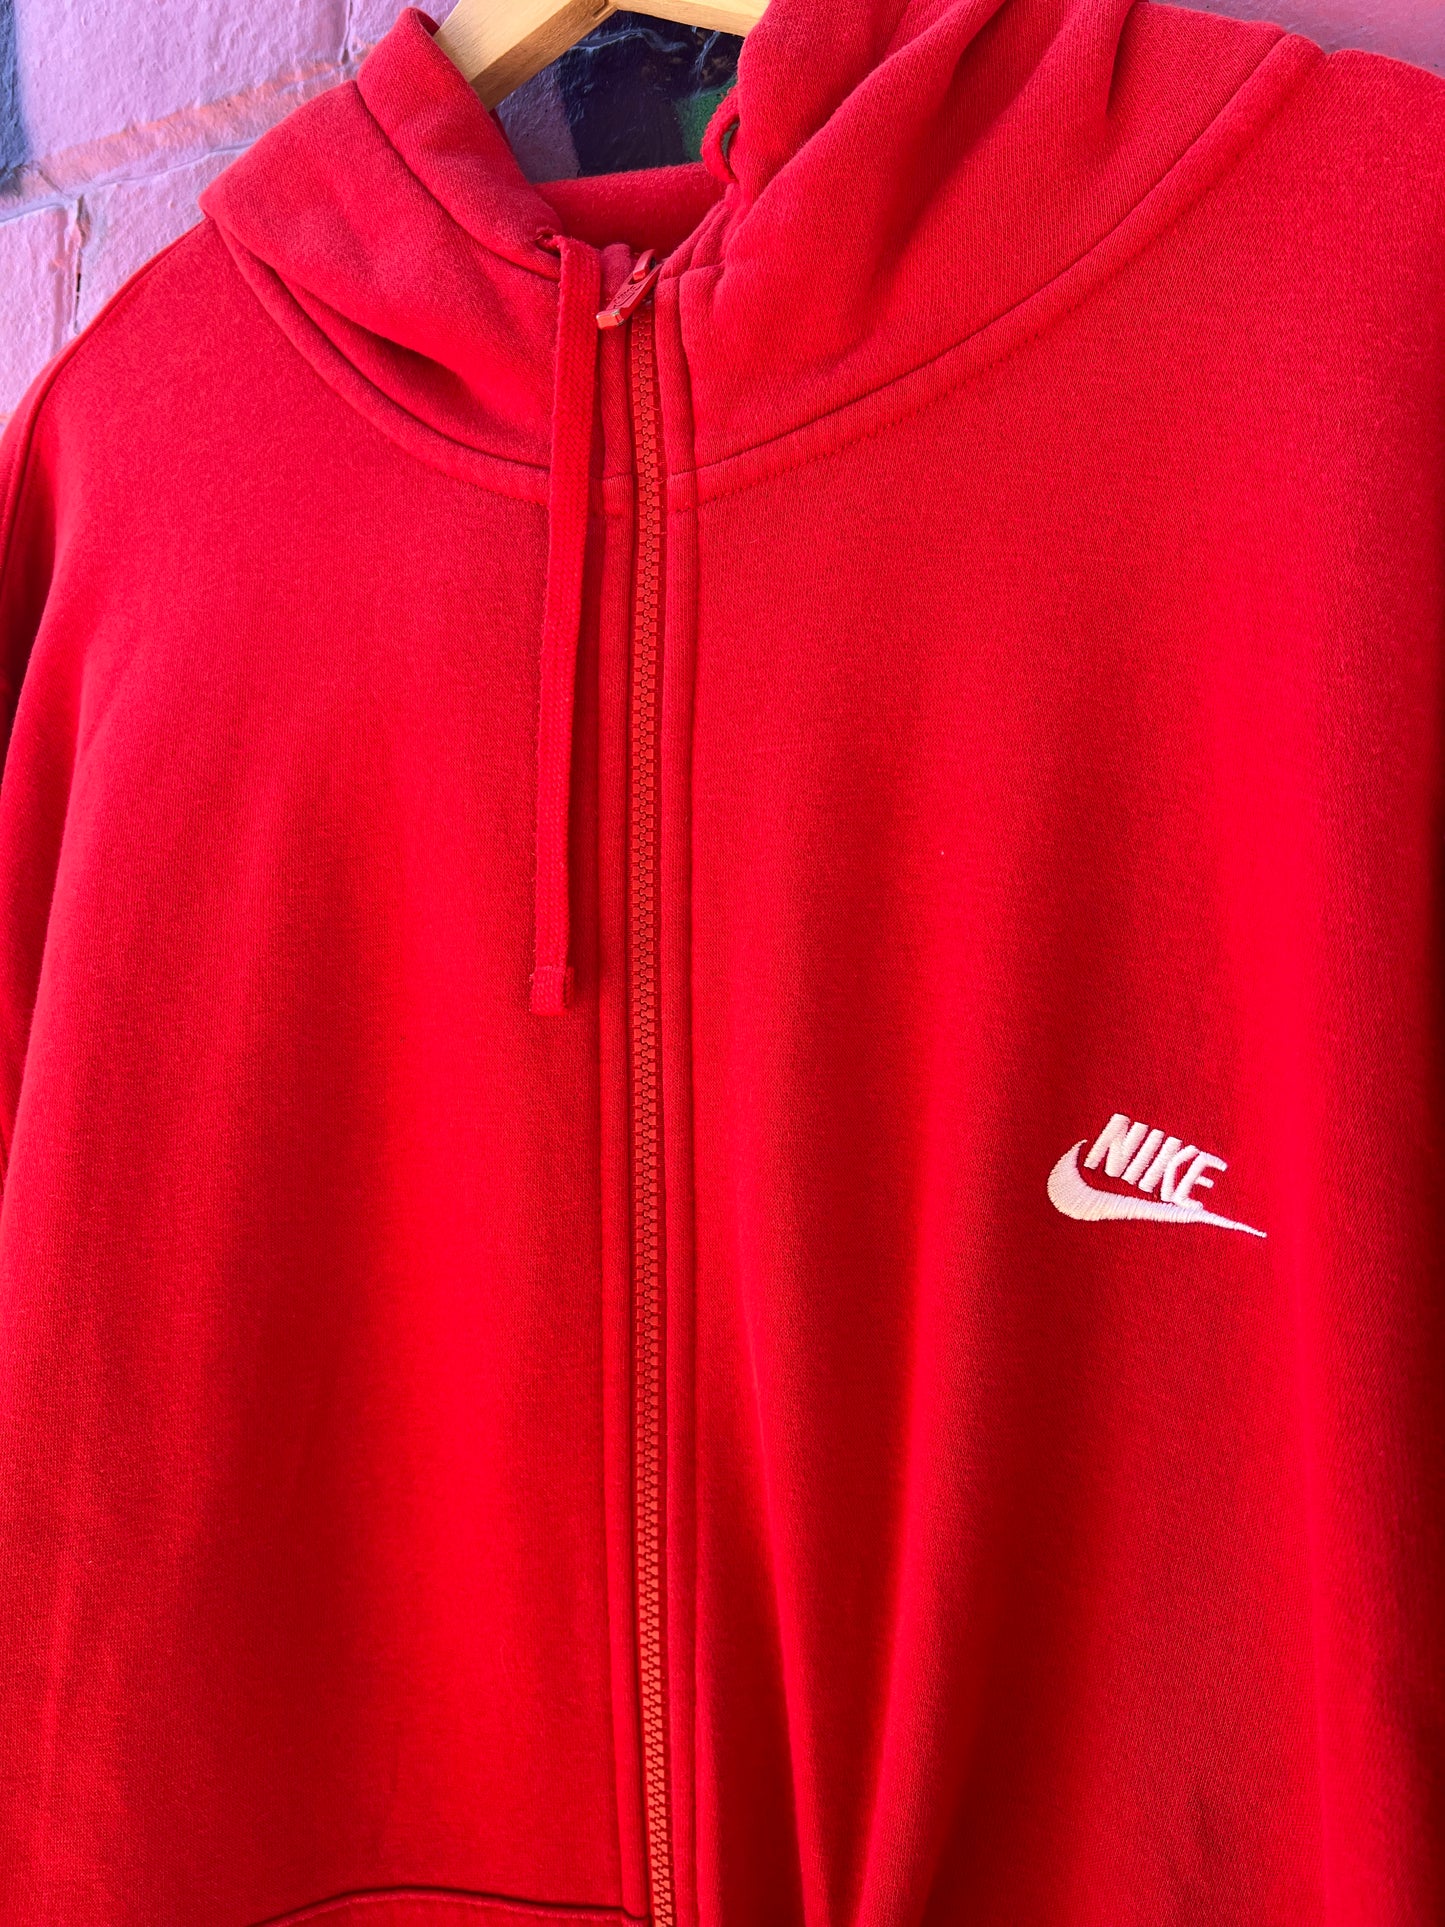 4XL - Nike Zip Up Red Hoodie